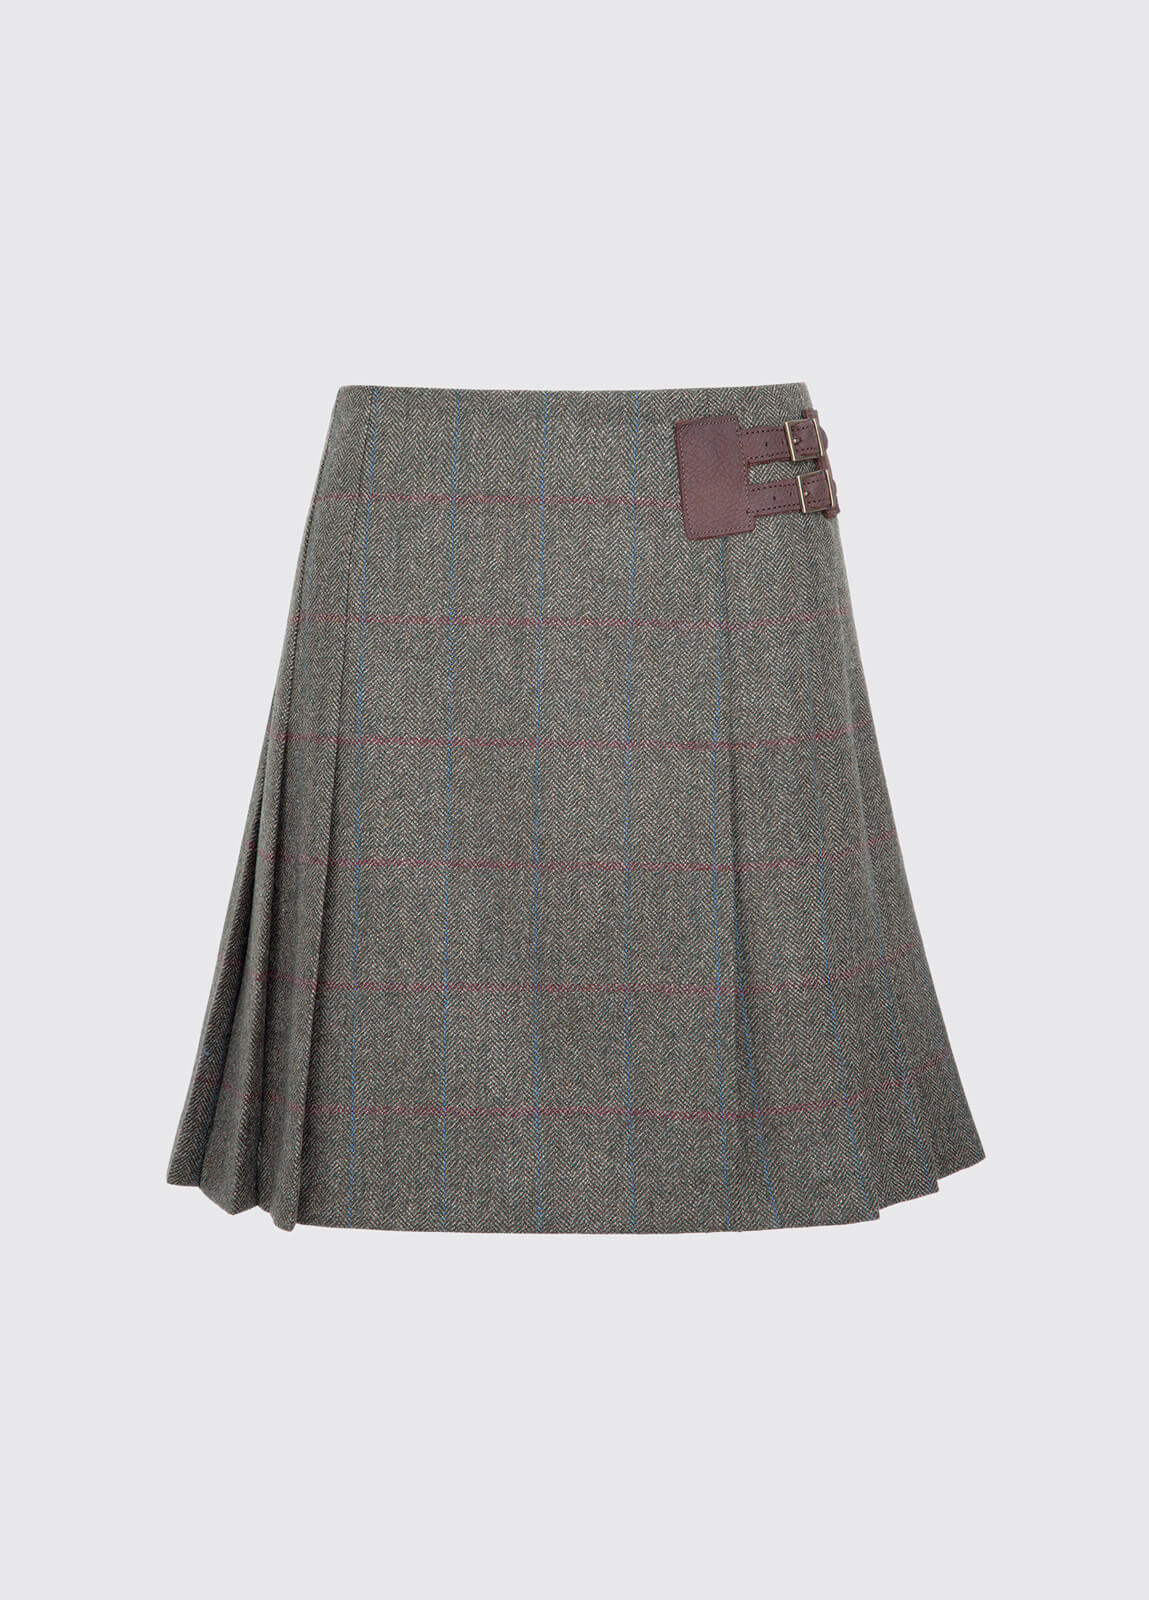 Foxglove Tweed Skirt - Moss